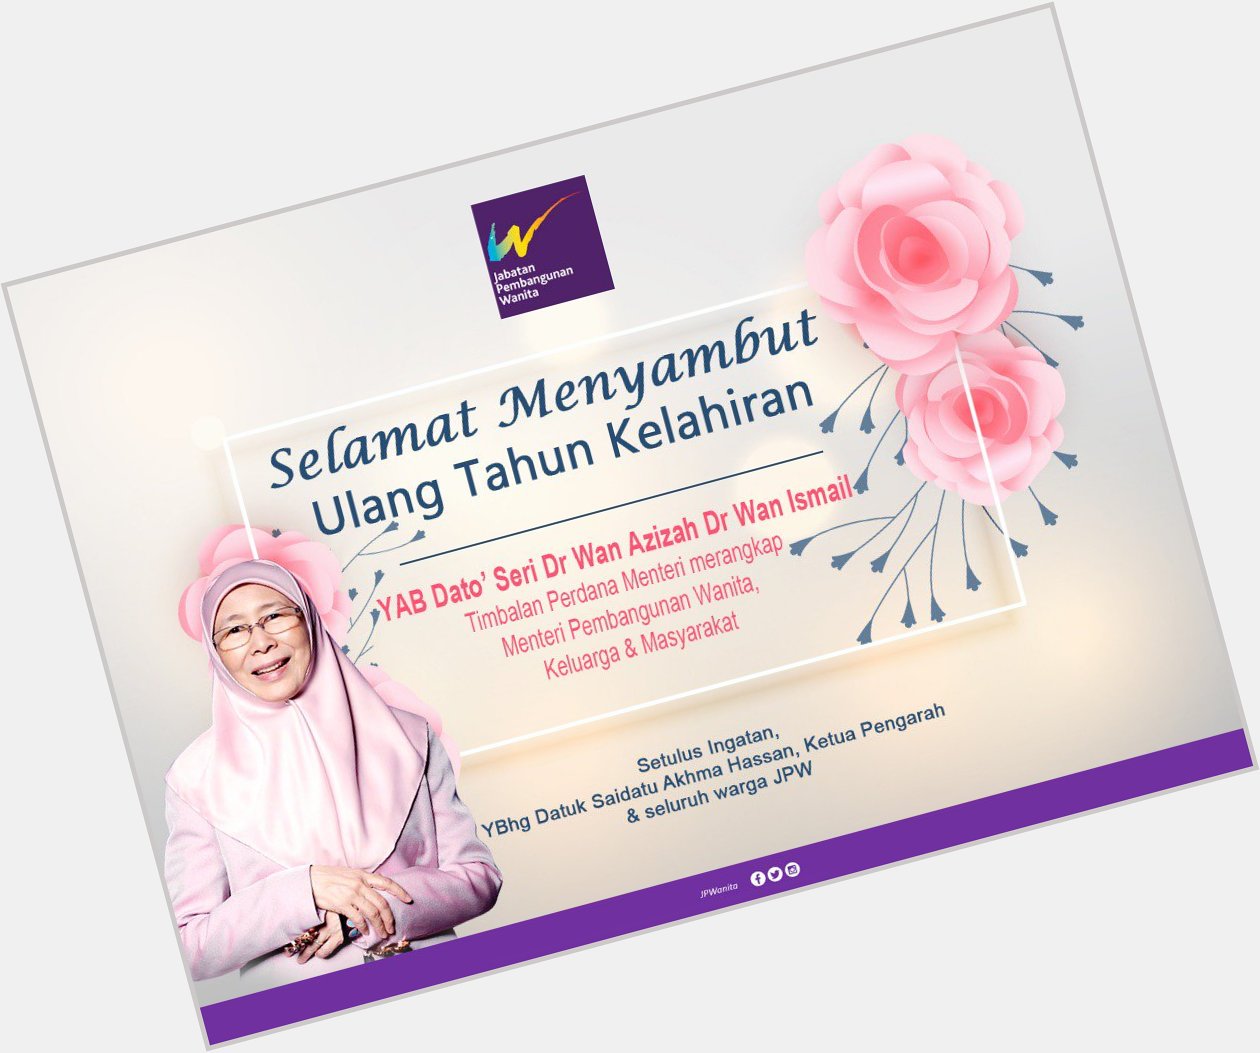 Happy Birthday YAB Dato\ Seri Dr Wan Azizah Dr Wan Ismail. Semoga terus sehat dan sejahtera sentiasa. 